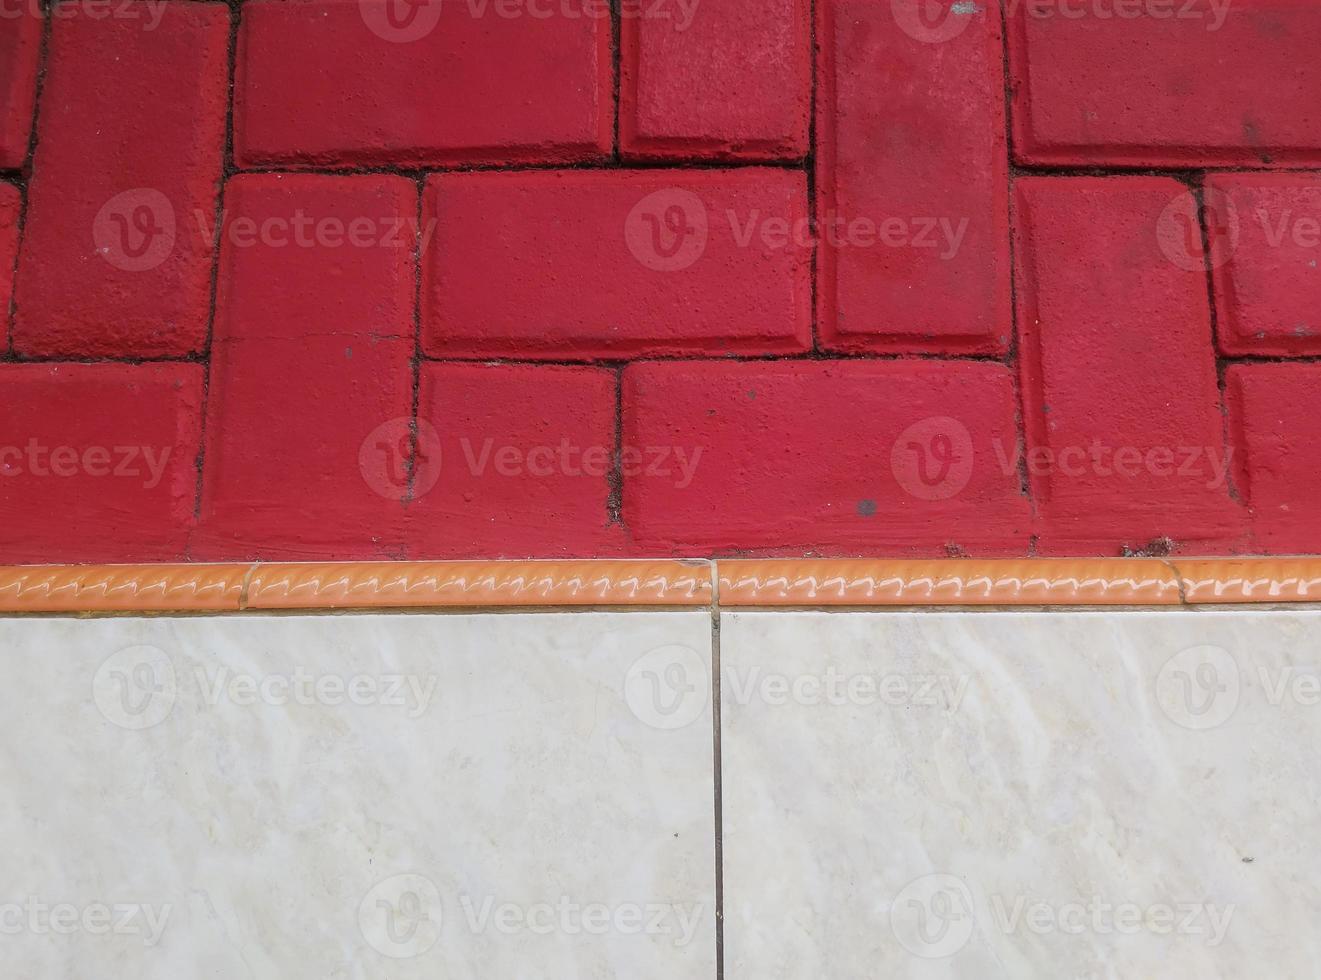 padrão de piso de pavimentação vermelho e telha cerâmica branca foto